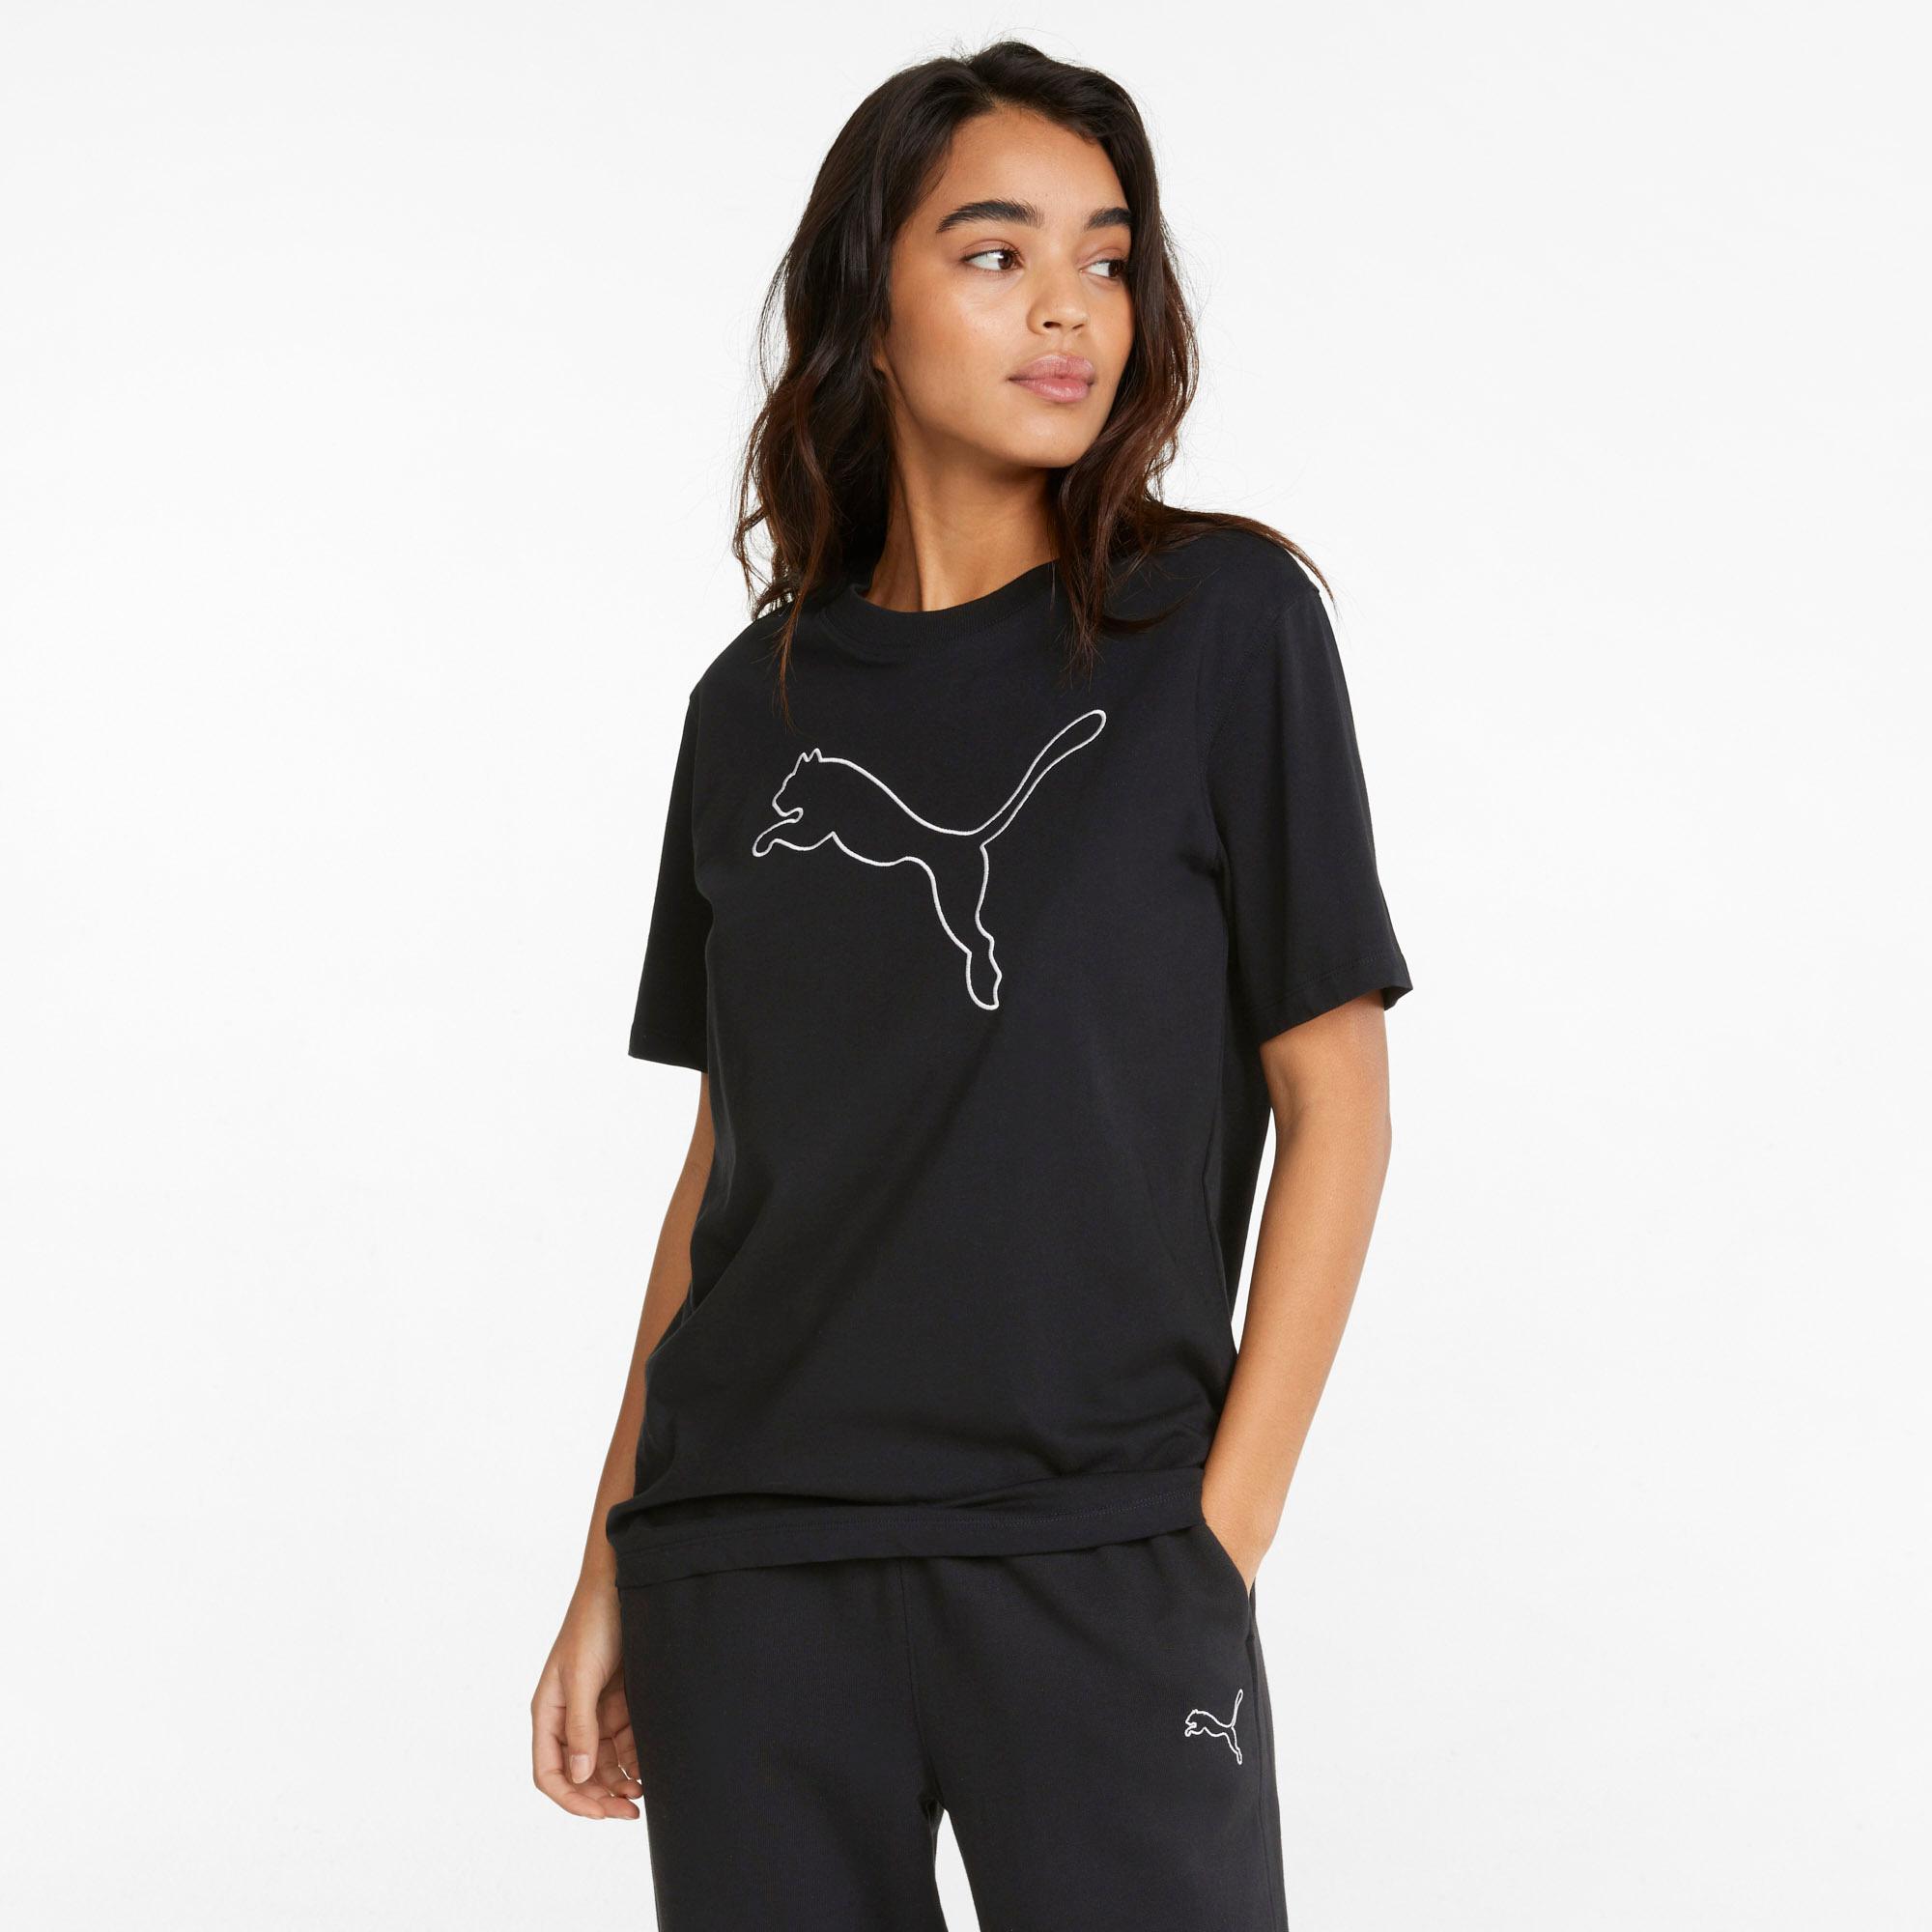 PUMA HER SportScheck T-Shirt im Shop kaufen von puma black Online Damen